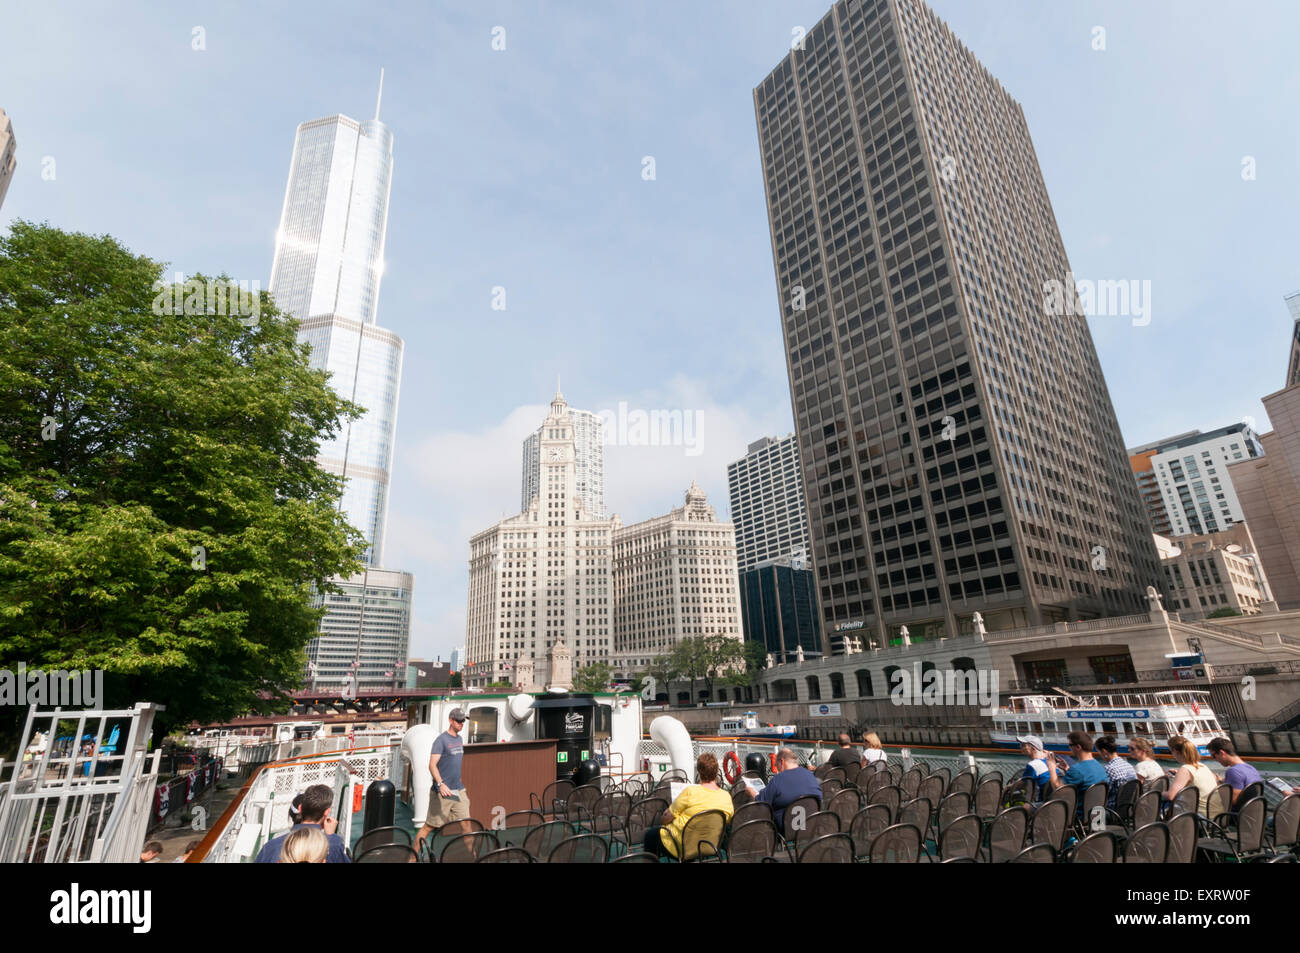 Les touristes à bord d'une croisière sur la fondation de l'Architecture de Chicago avec la Trump Tower et Wrigley Building en arrière-plan. Banque D'Images